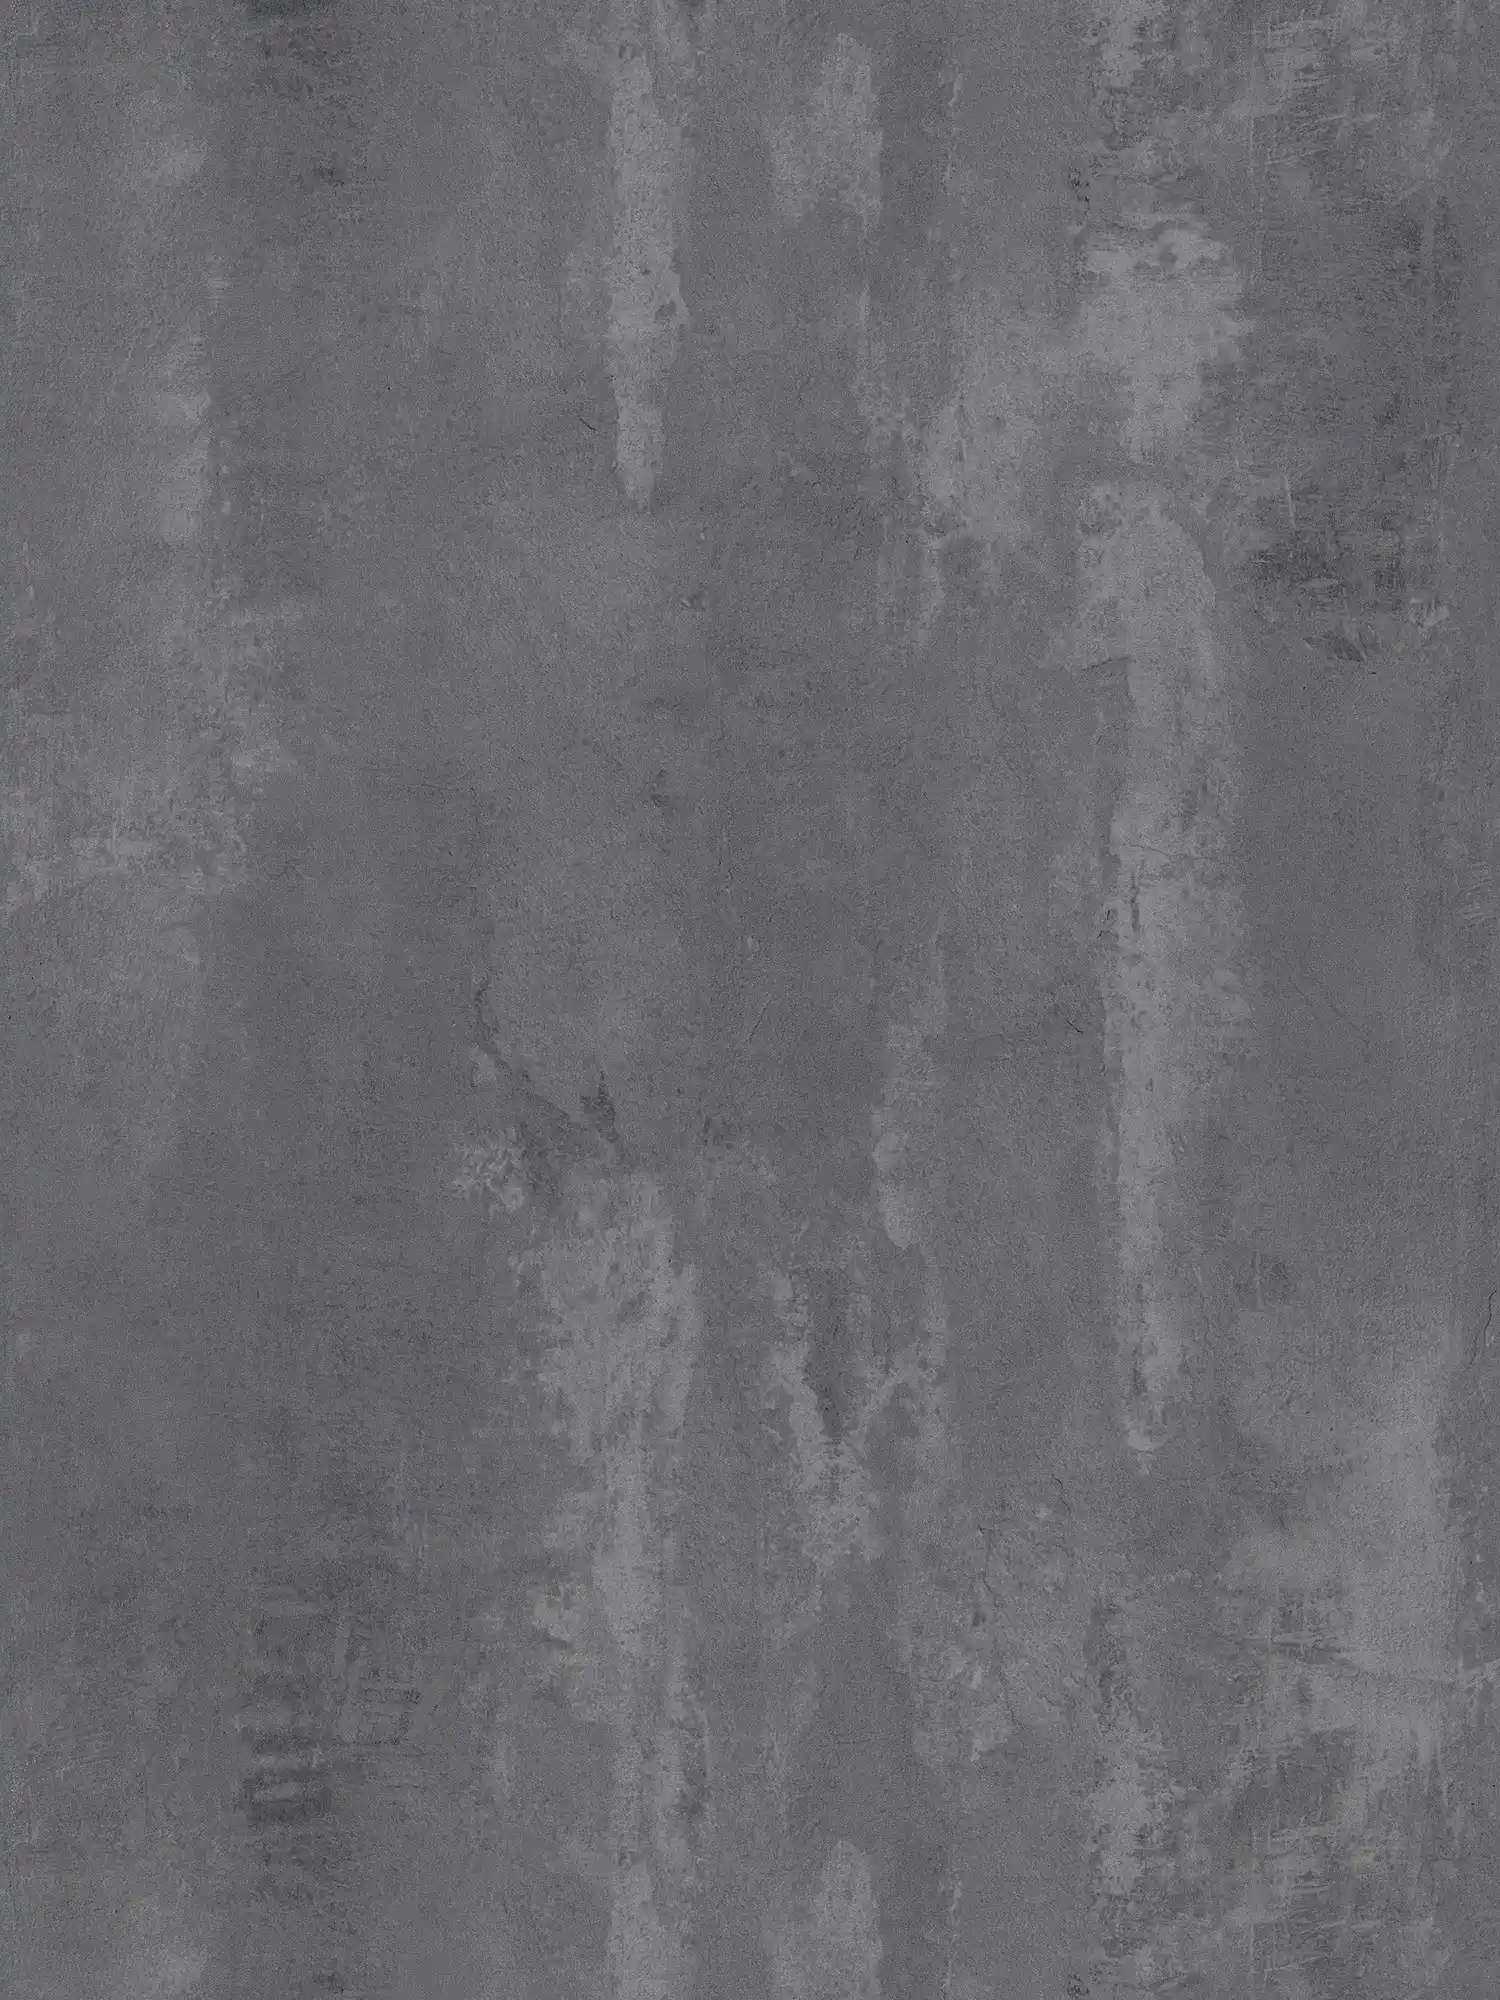         Carta da parati in cemento scuro con motivi rustici e stile industriale - grigio
    